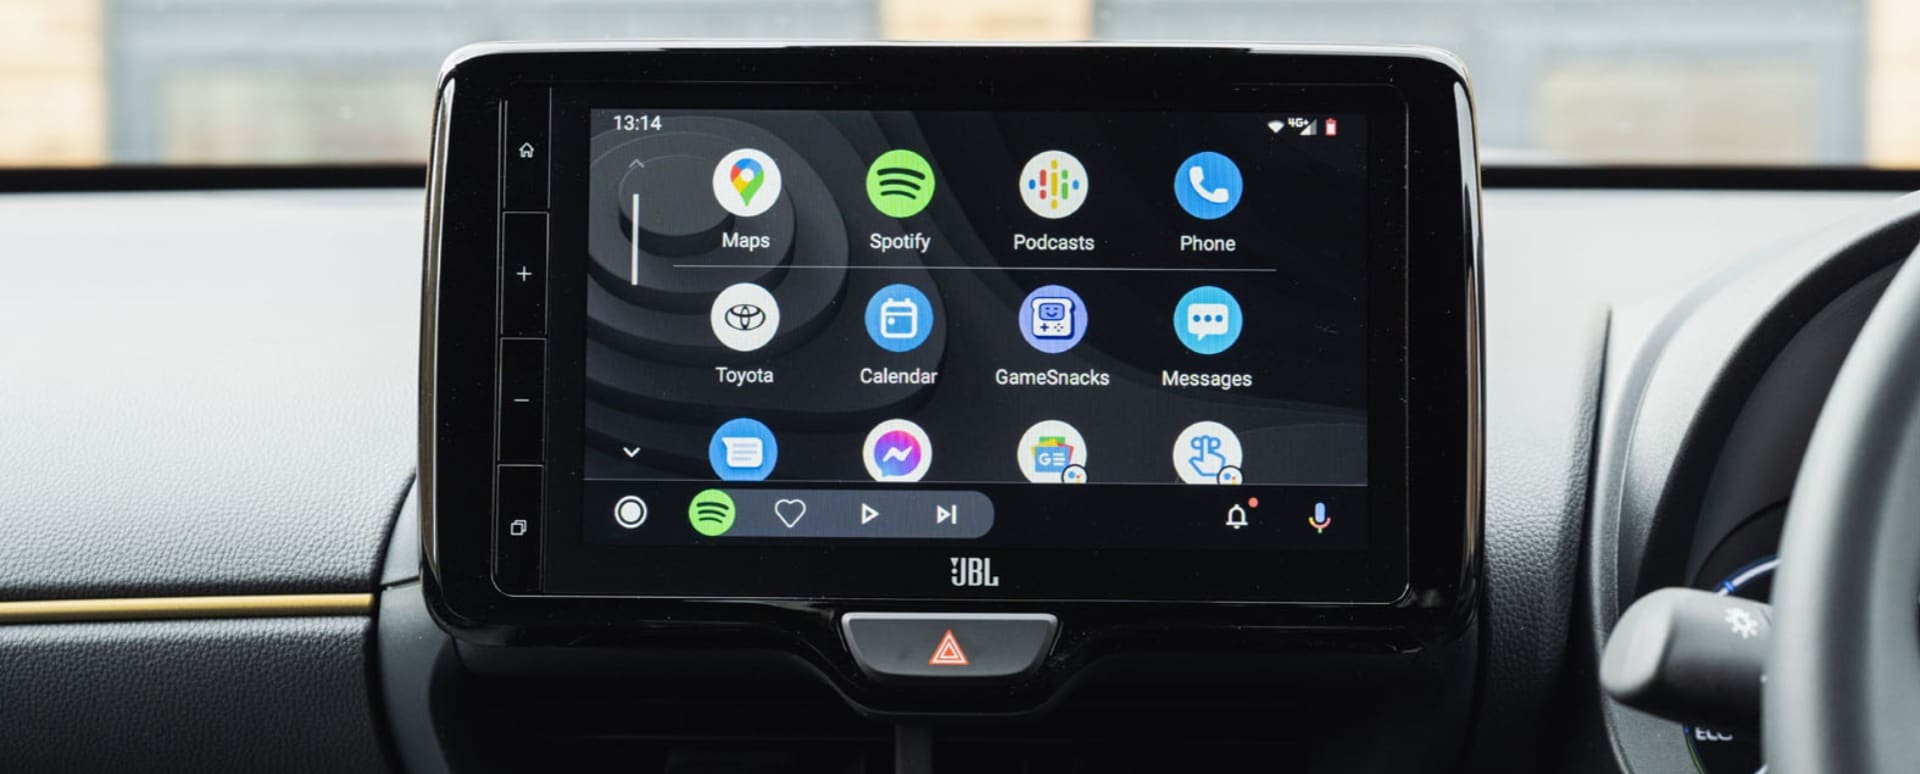 Android Auto có thể thay thế hệ thống thông tin giải trí tích hợp sẵn (Ảnh: Internet)